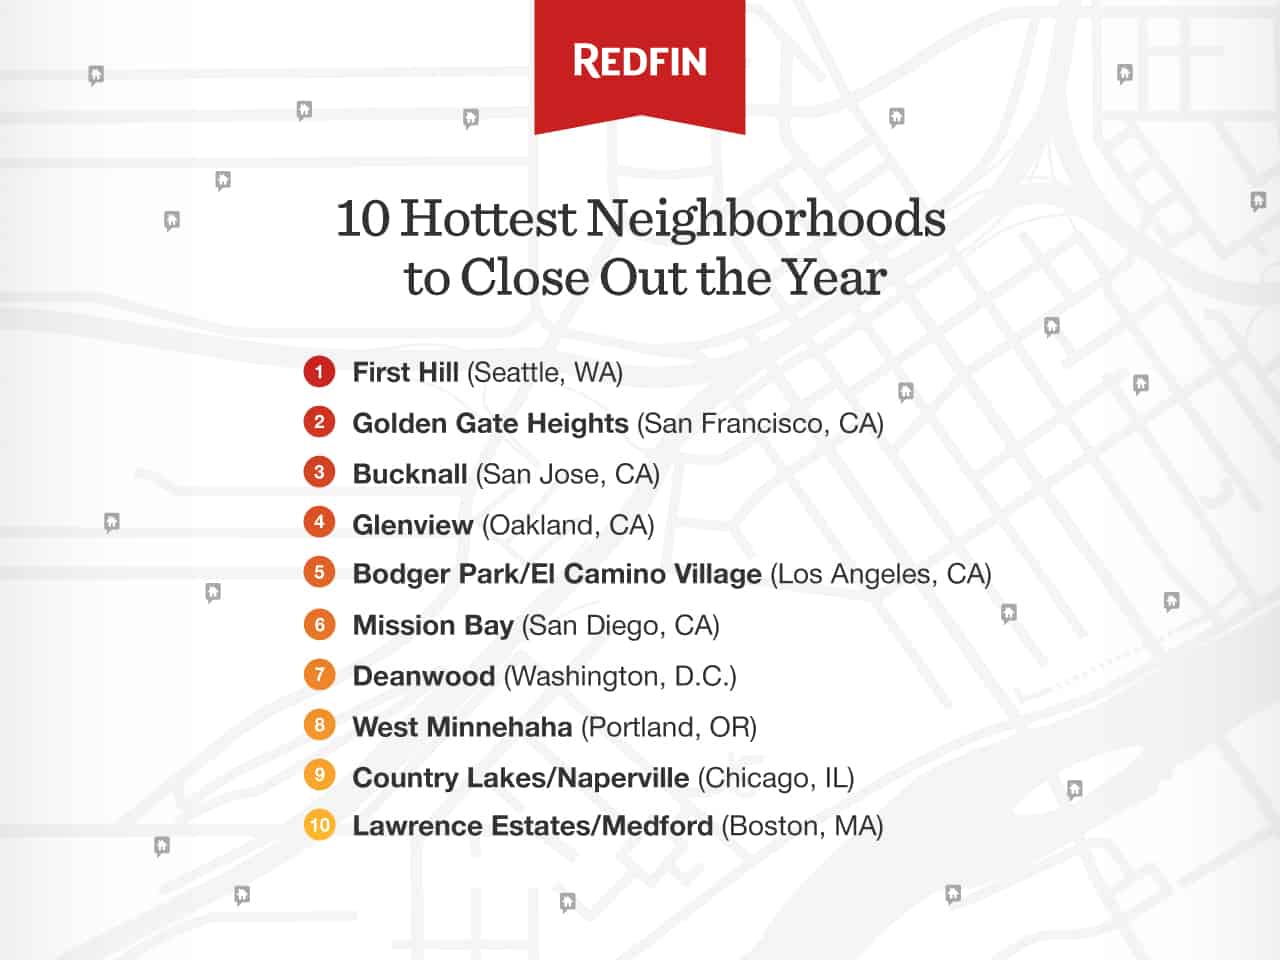 Top 10 Hottest Neighborhoods